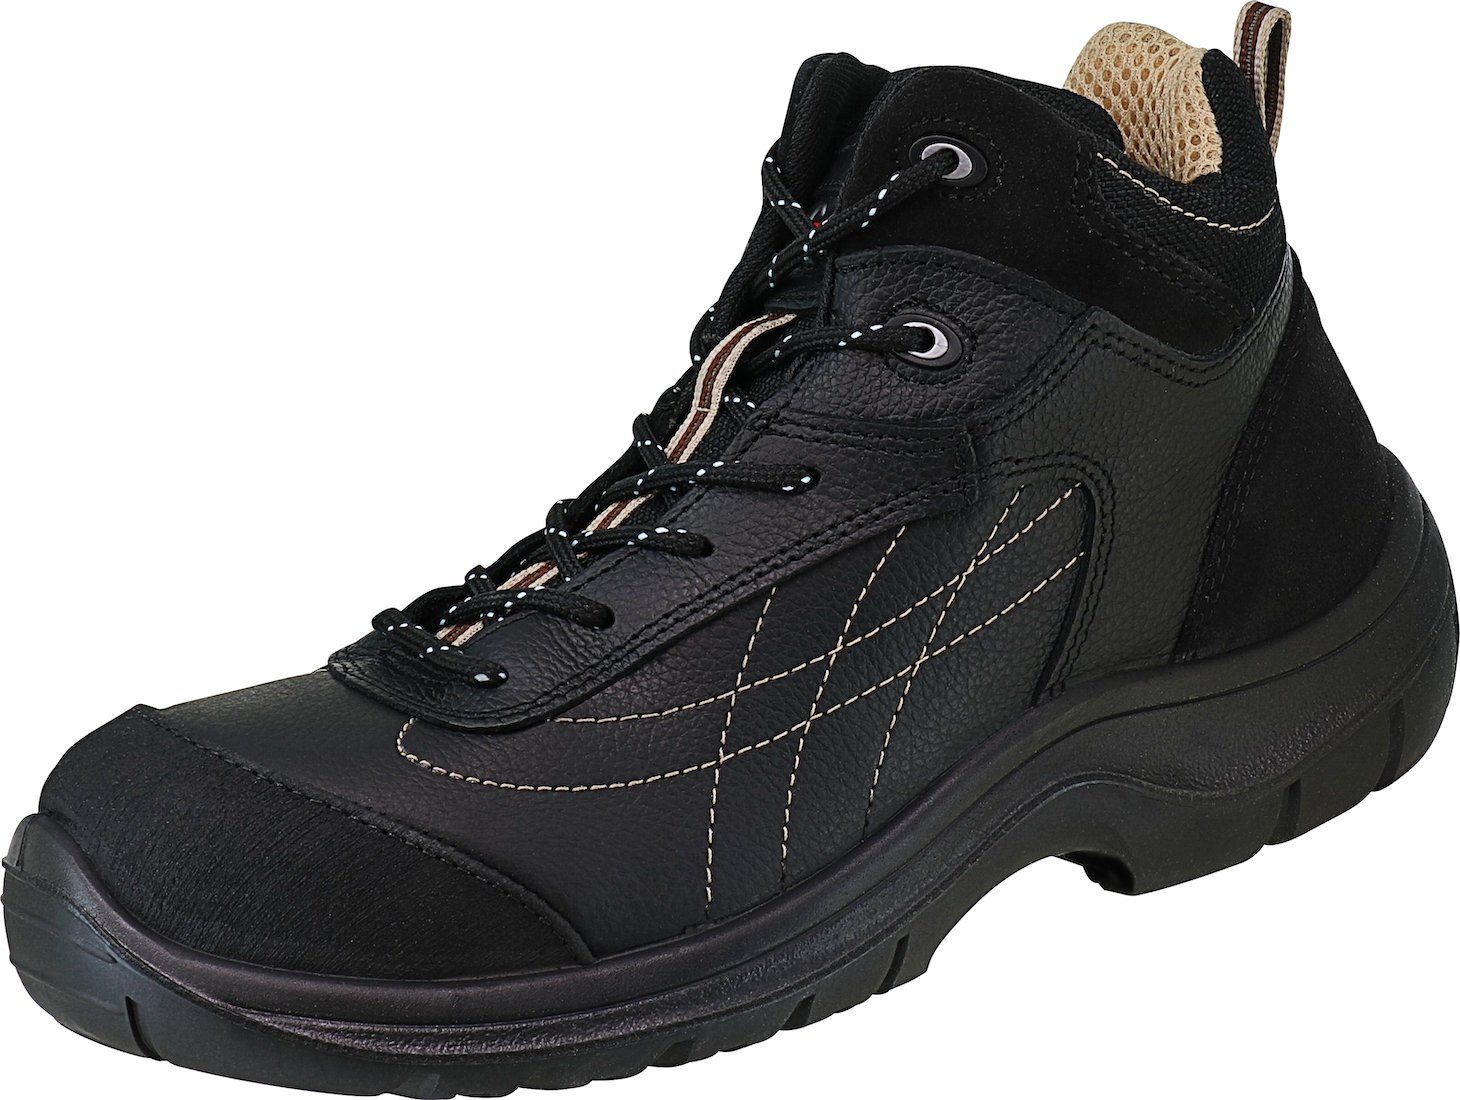 Arbeitsschuhe GAR Garsport® Größe 41 S3 Stiefel, schwarz Sicherheitsstiefel